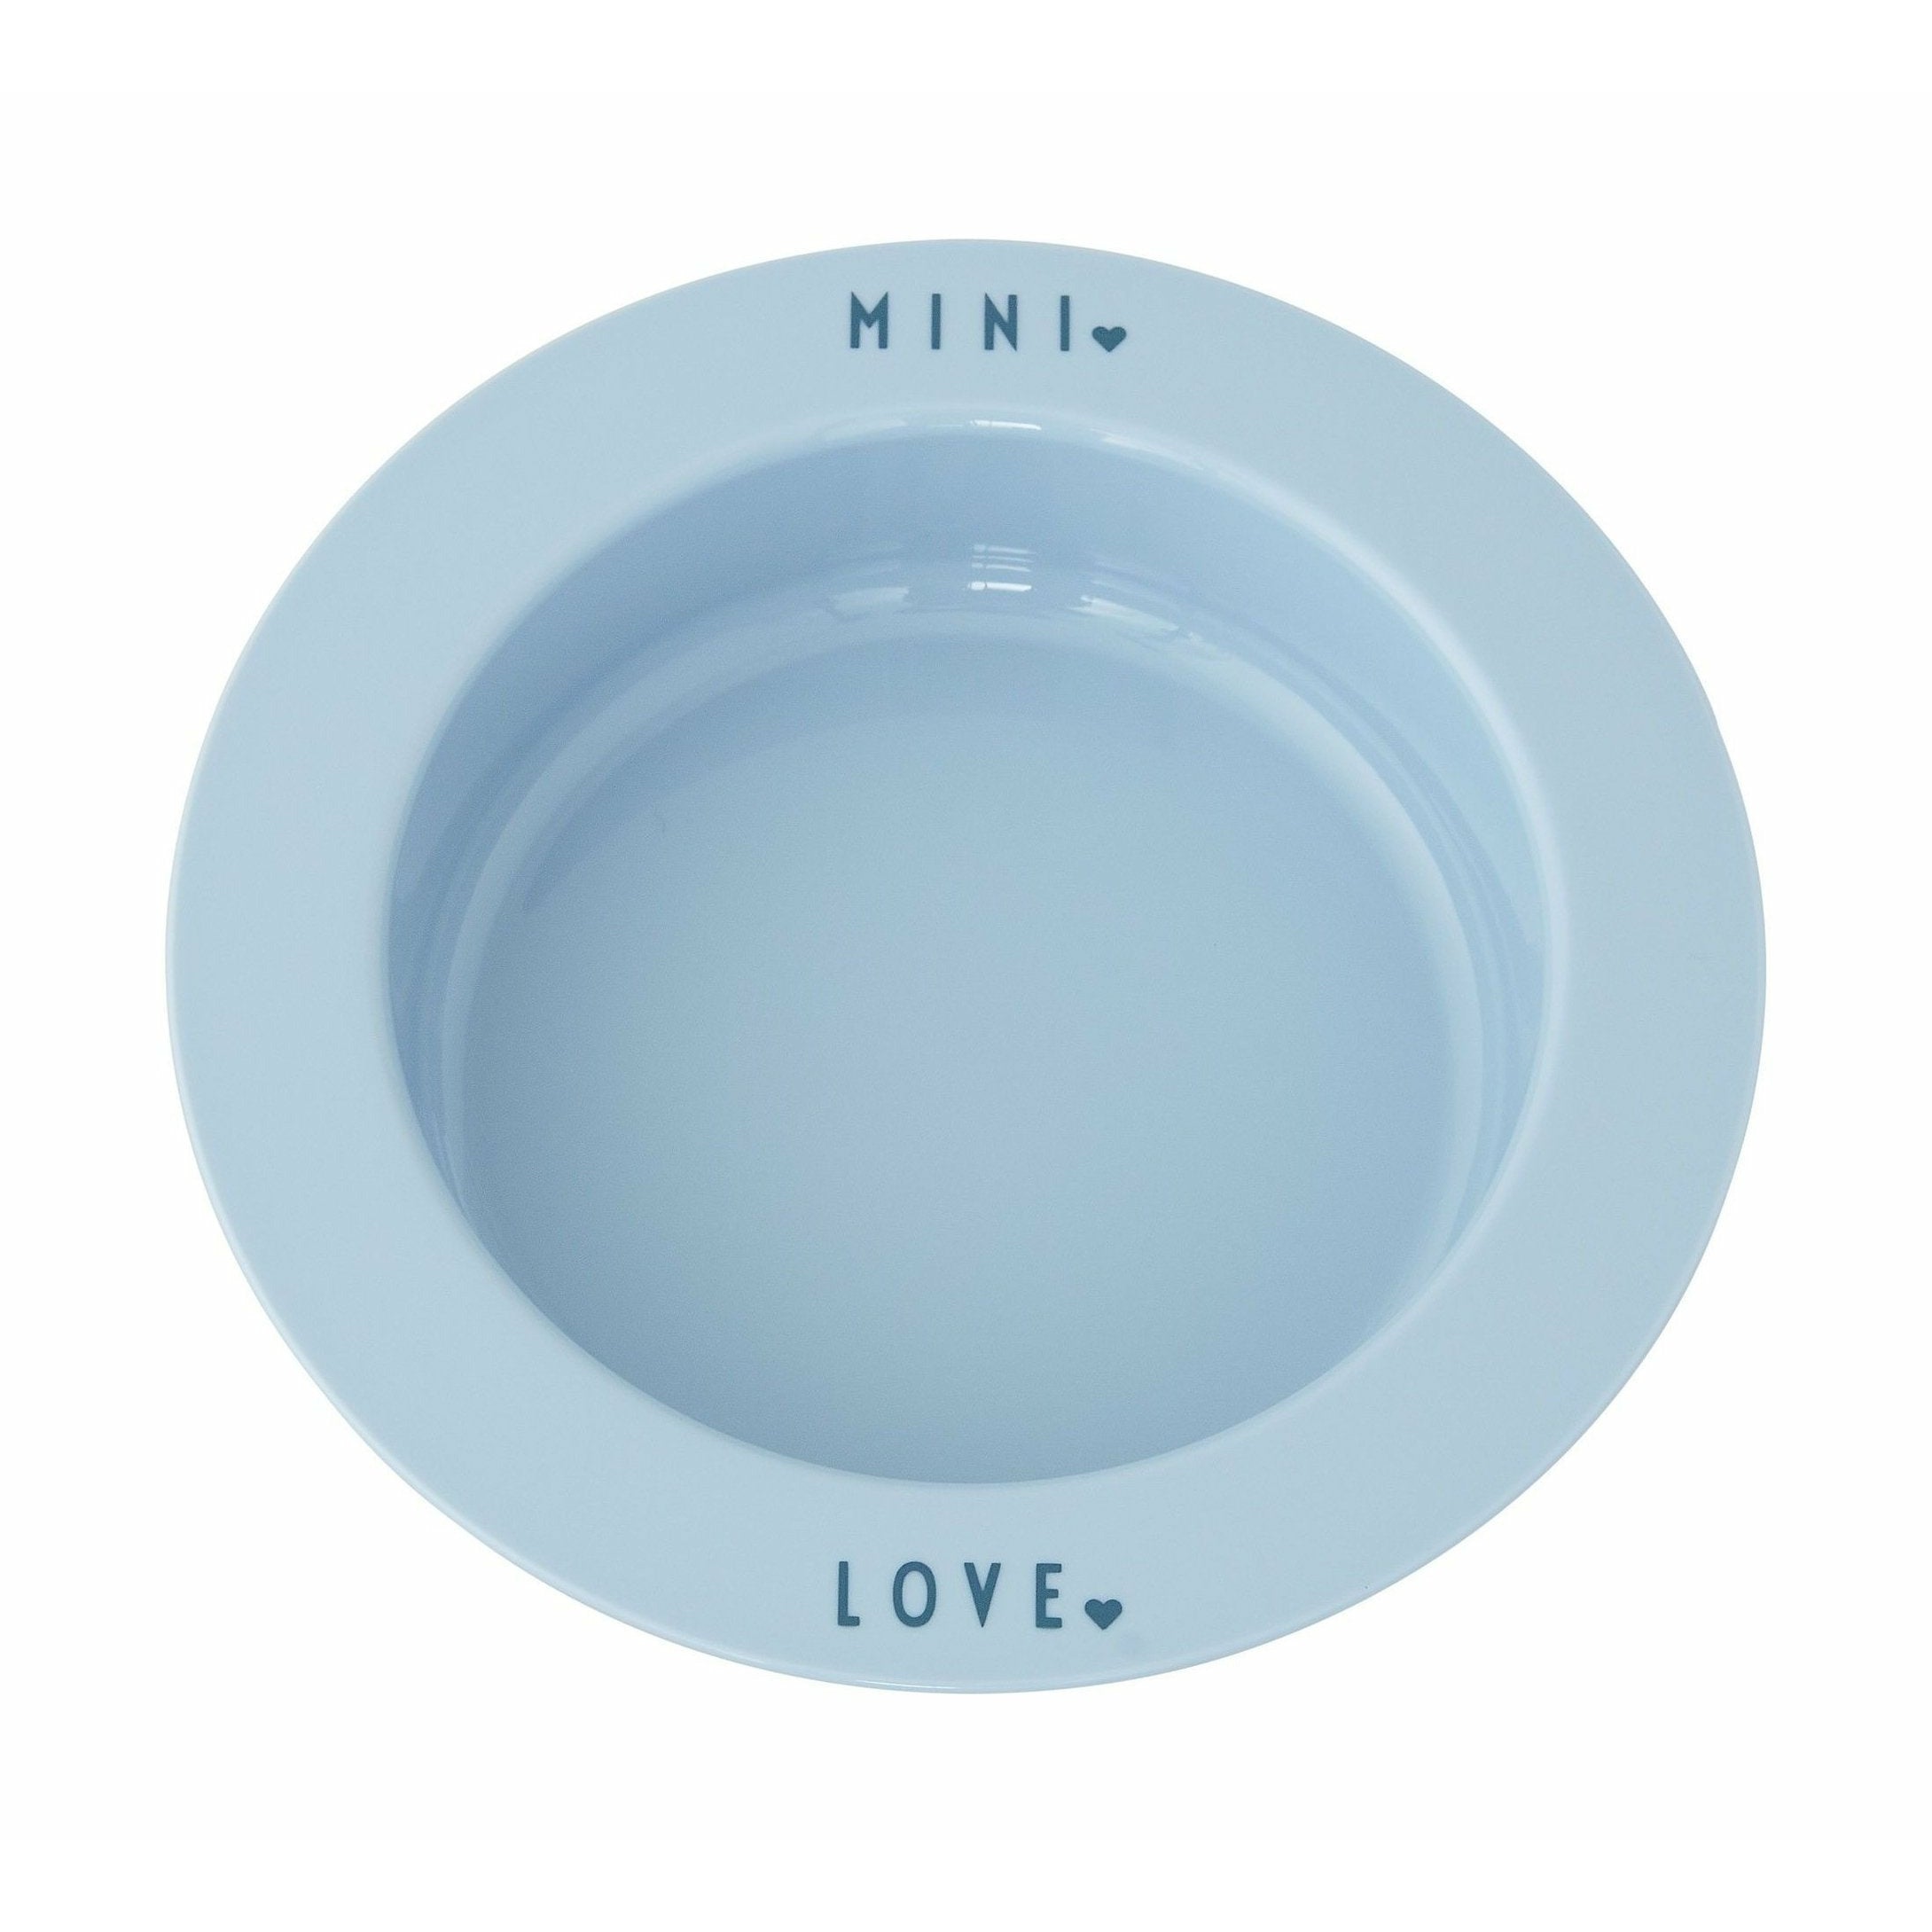 Letras de diseño mini plato favorito profundo, azul claro